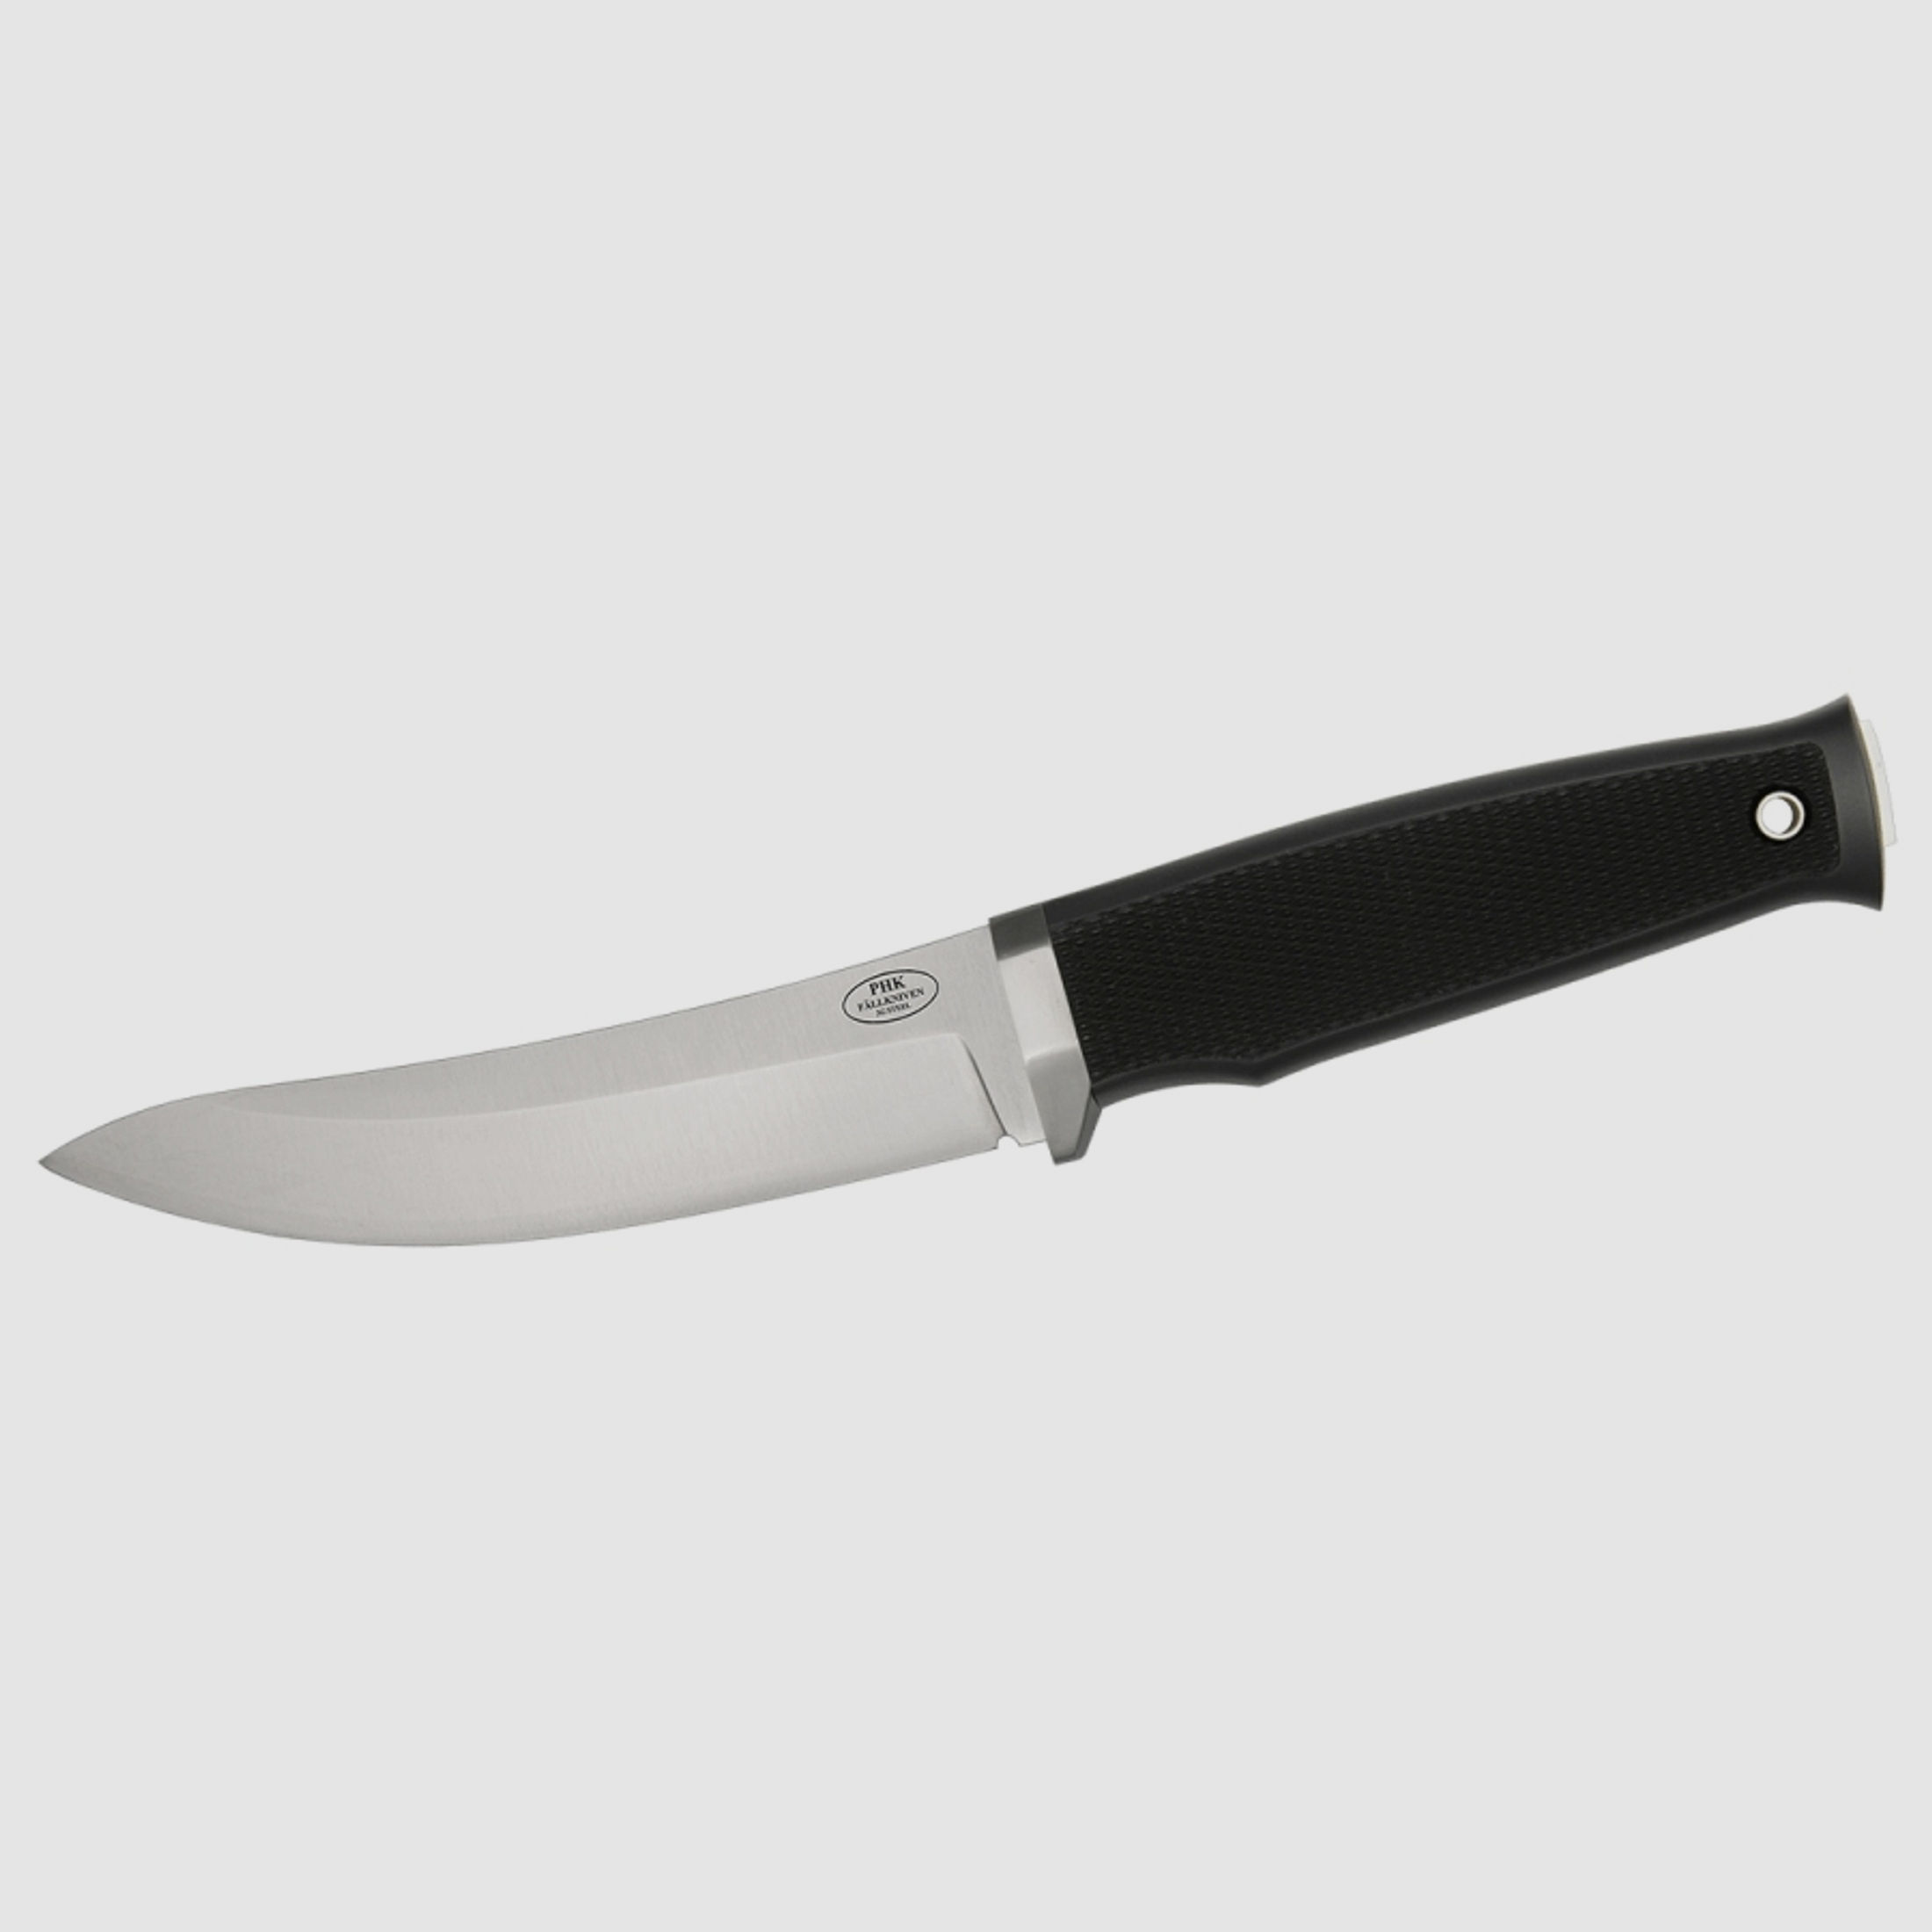 PHKz - Hunting Knife | 90330